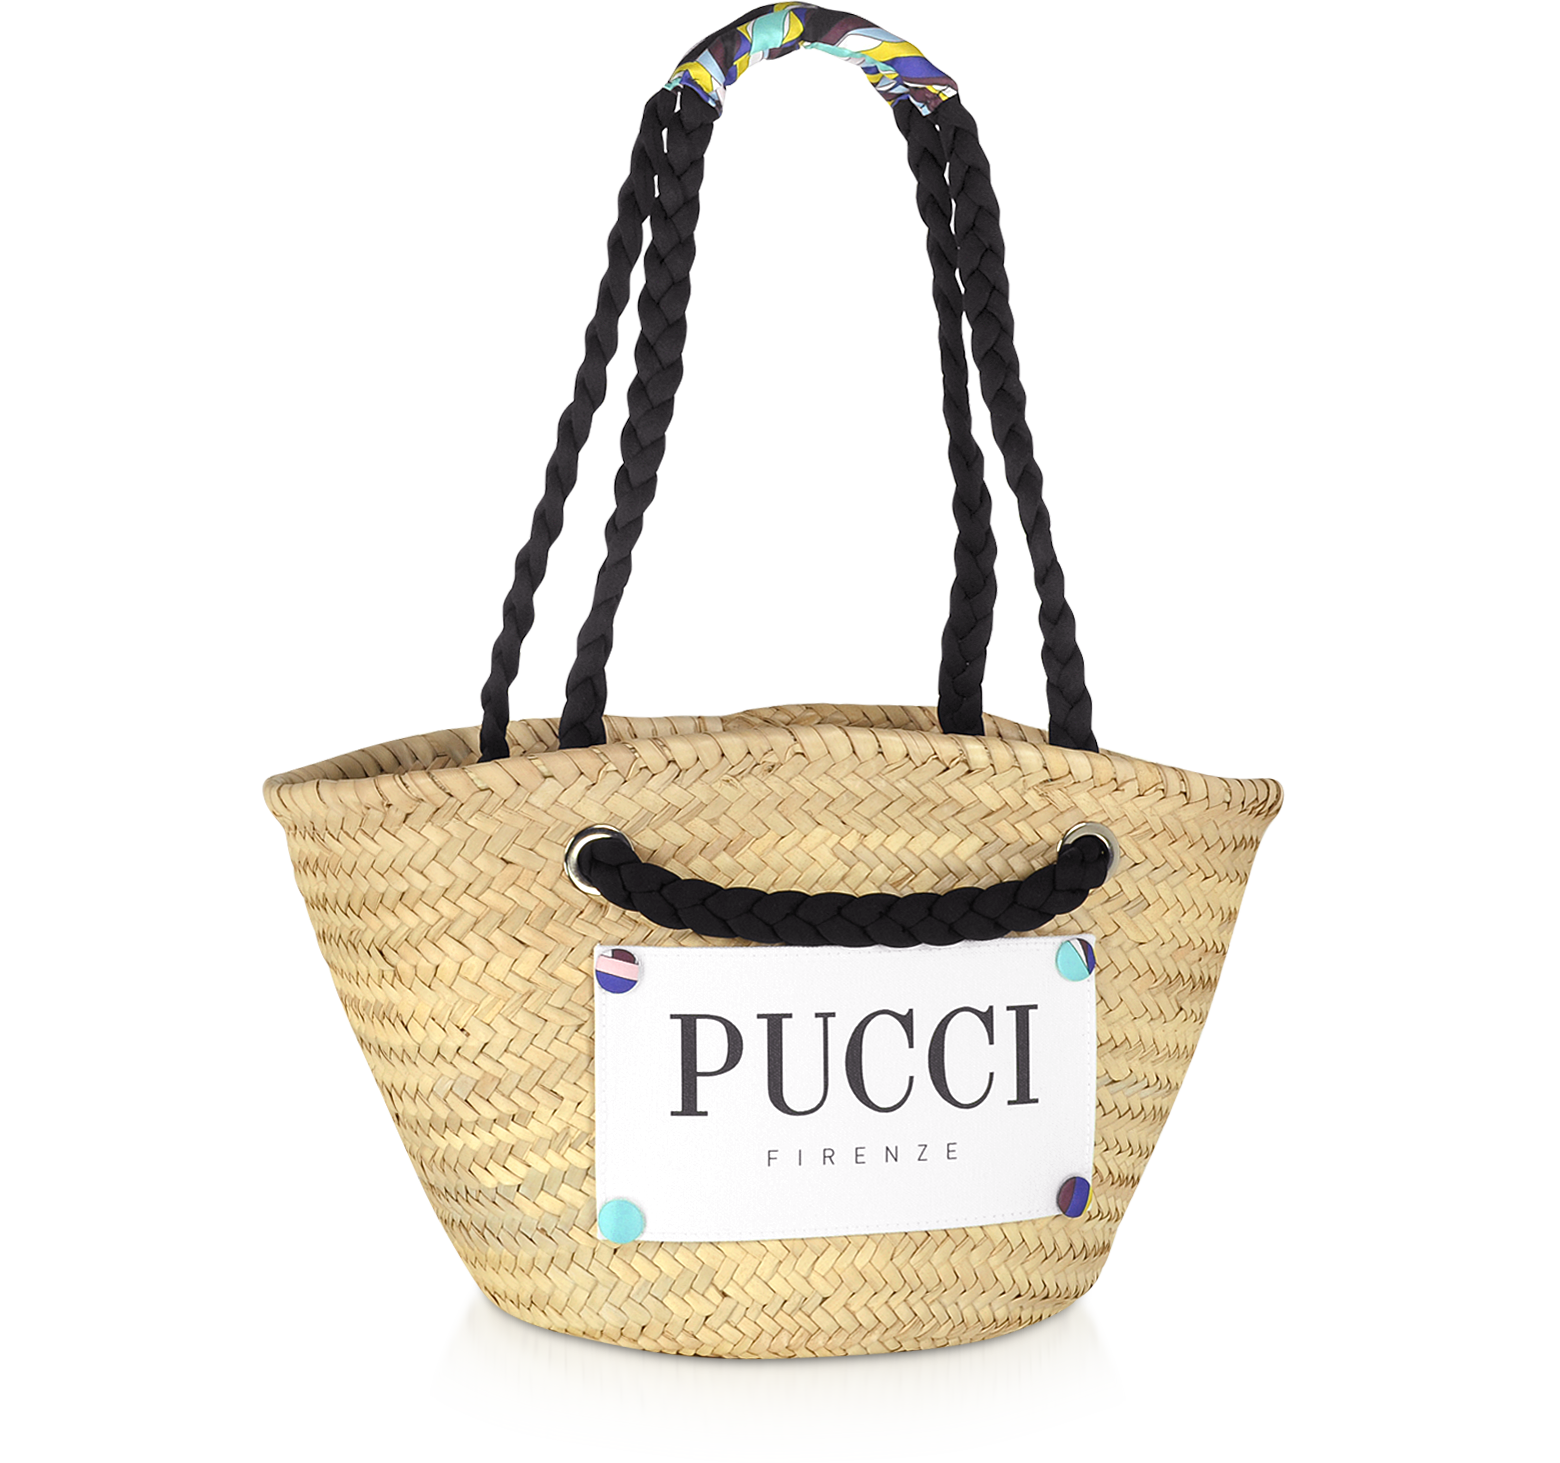 Emilio Pucci Straw Tote Bags